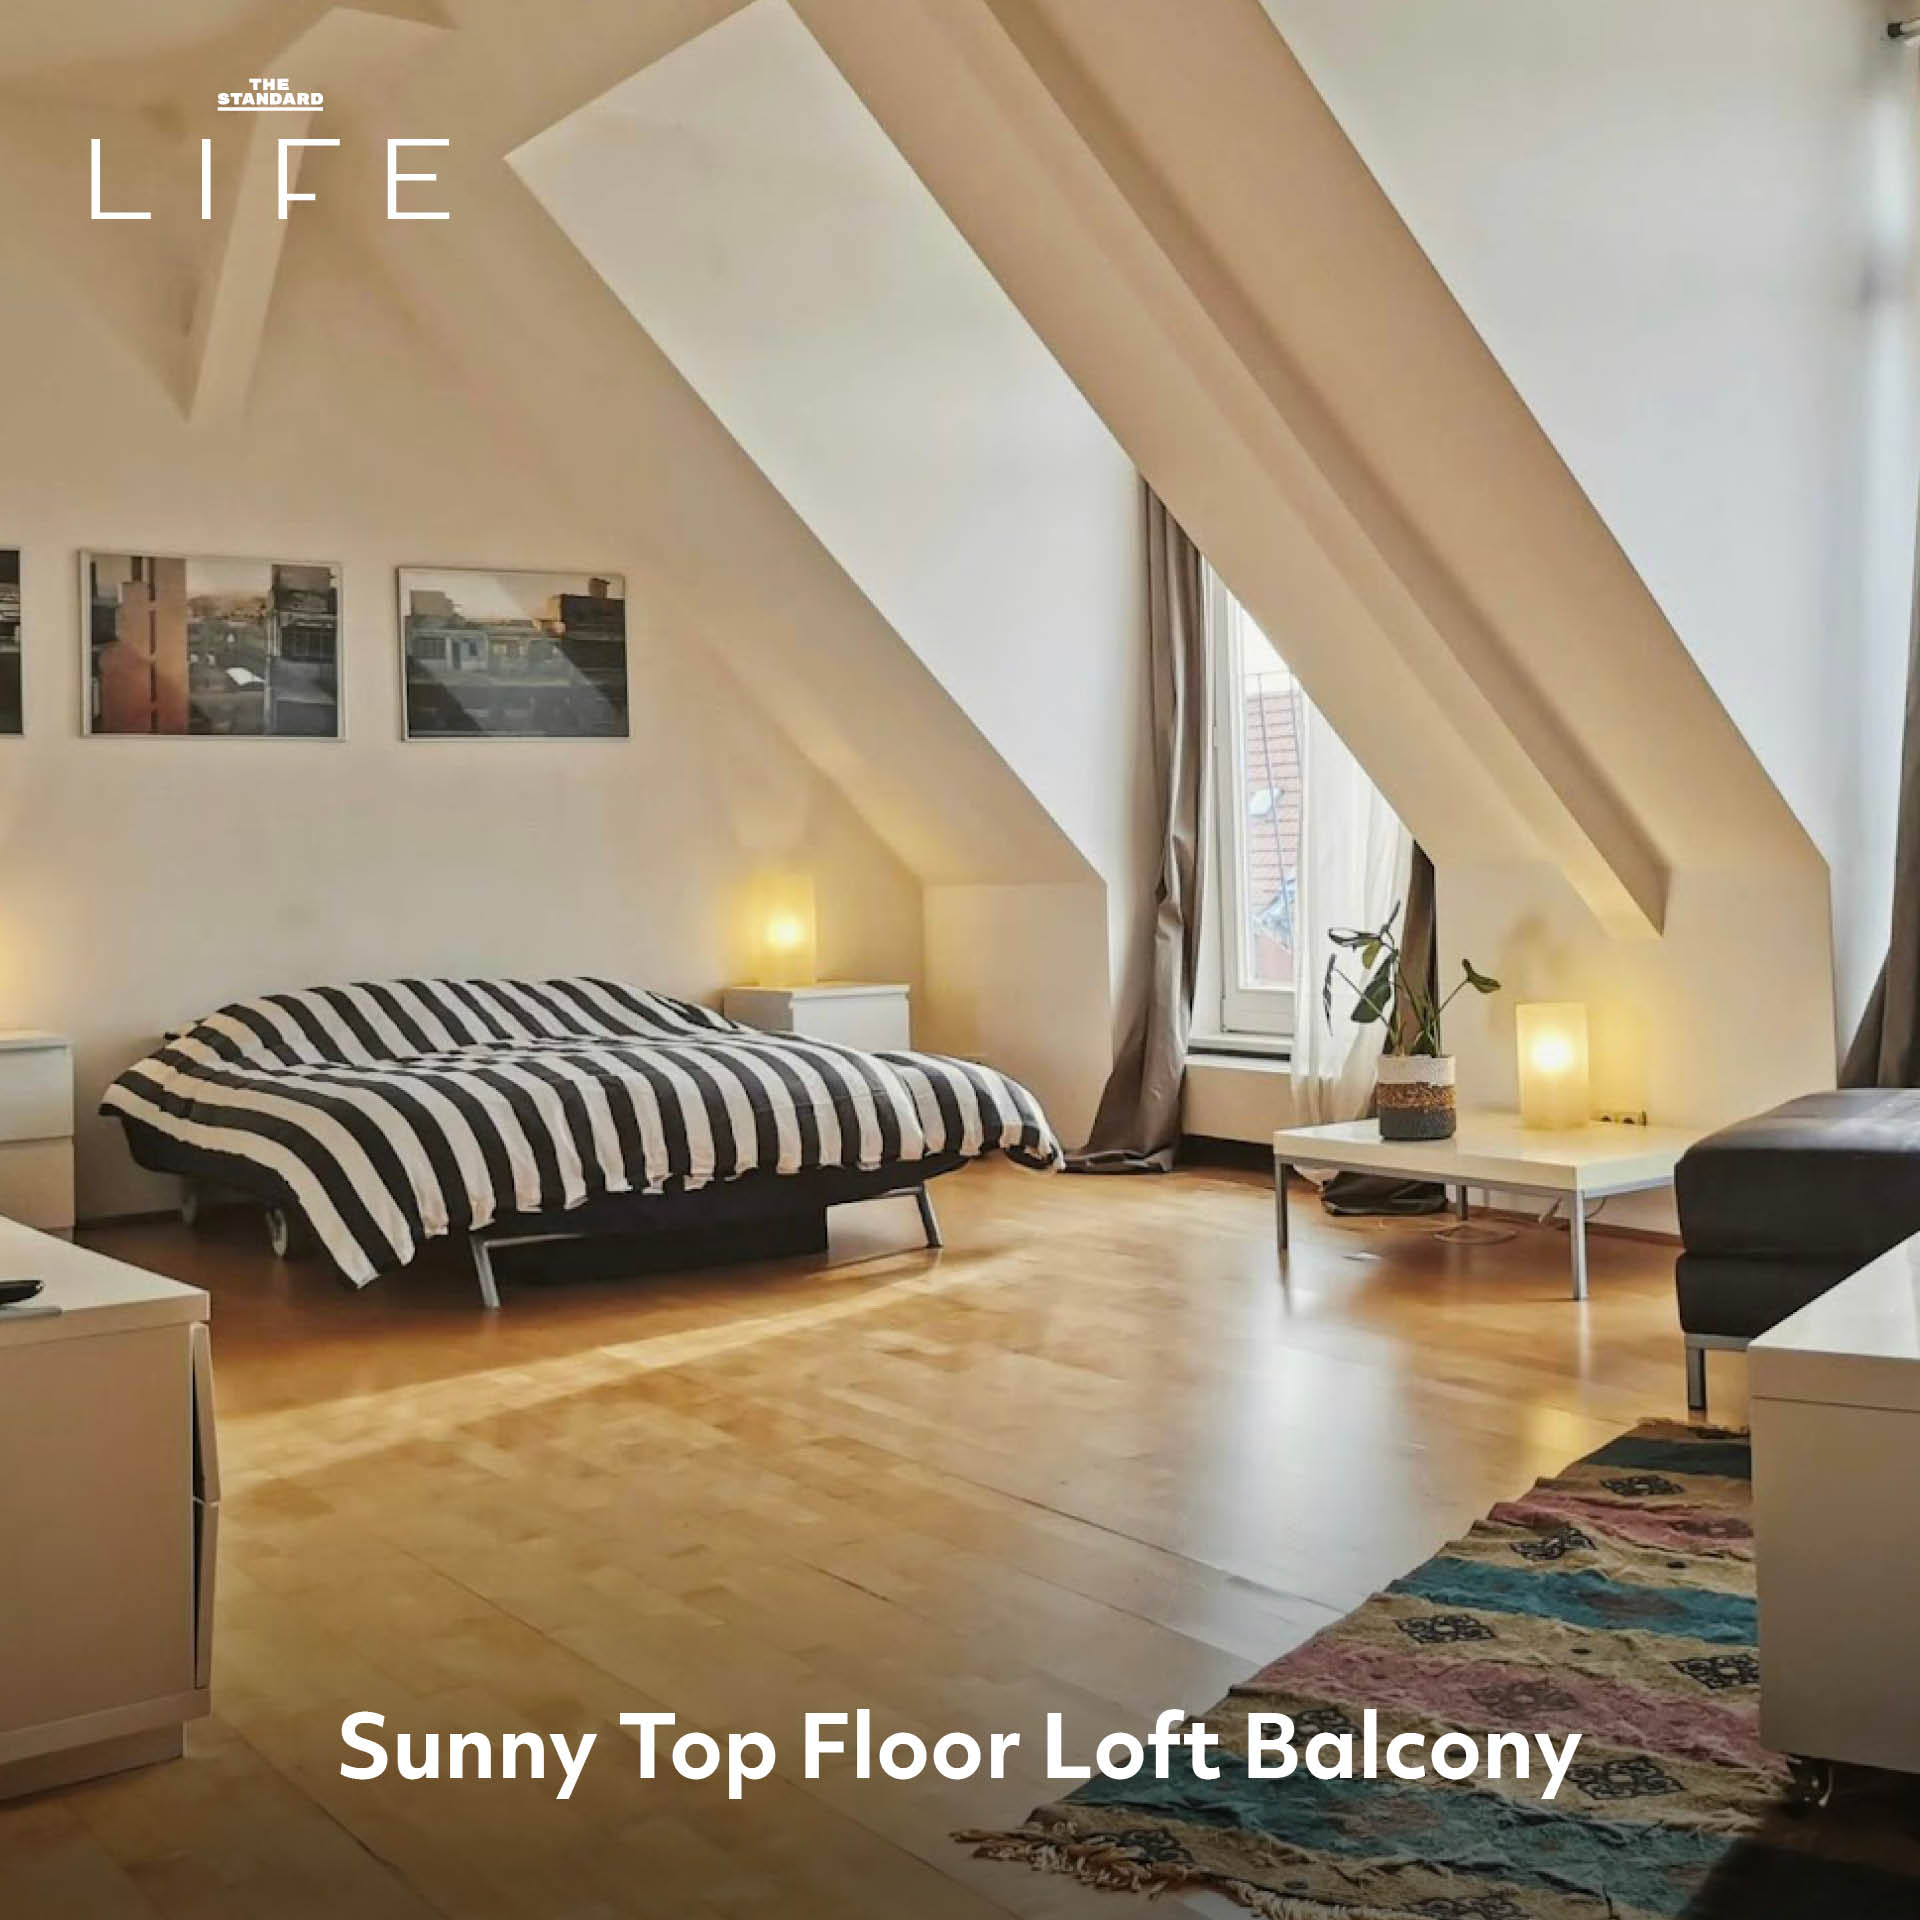 Sunny Top Floor Loft Balcony